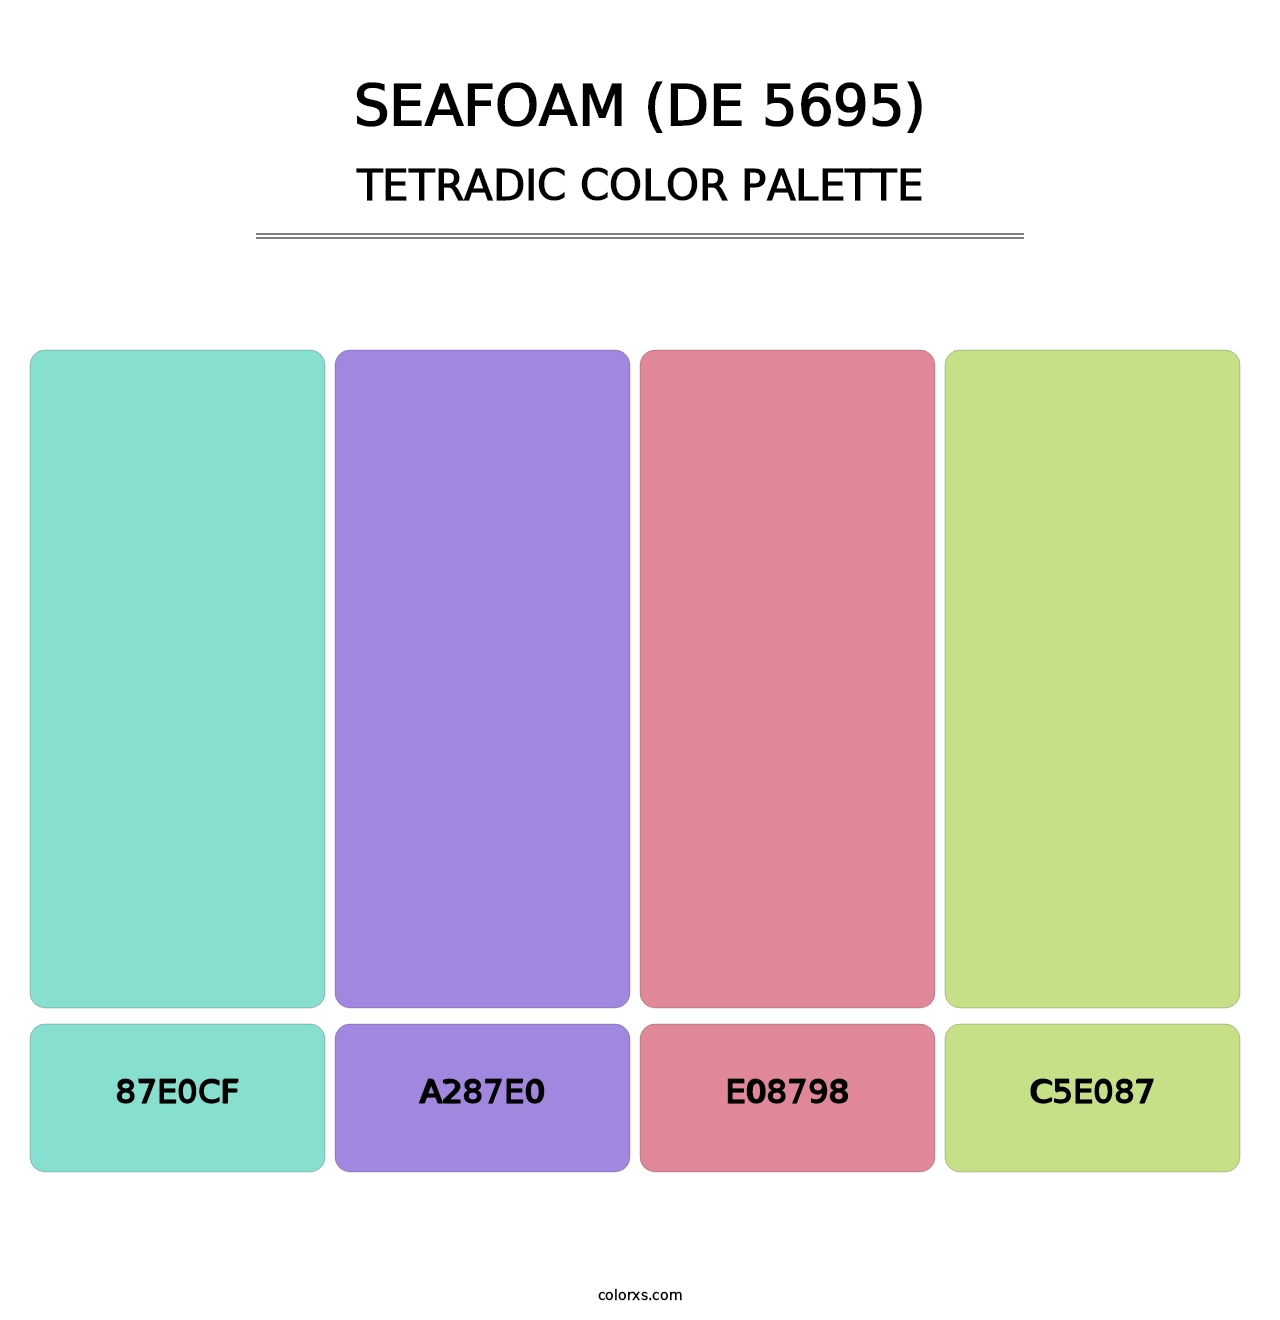 Seafoam (DE 5695) - Tetradic Color Palette